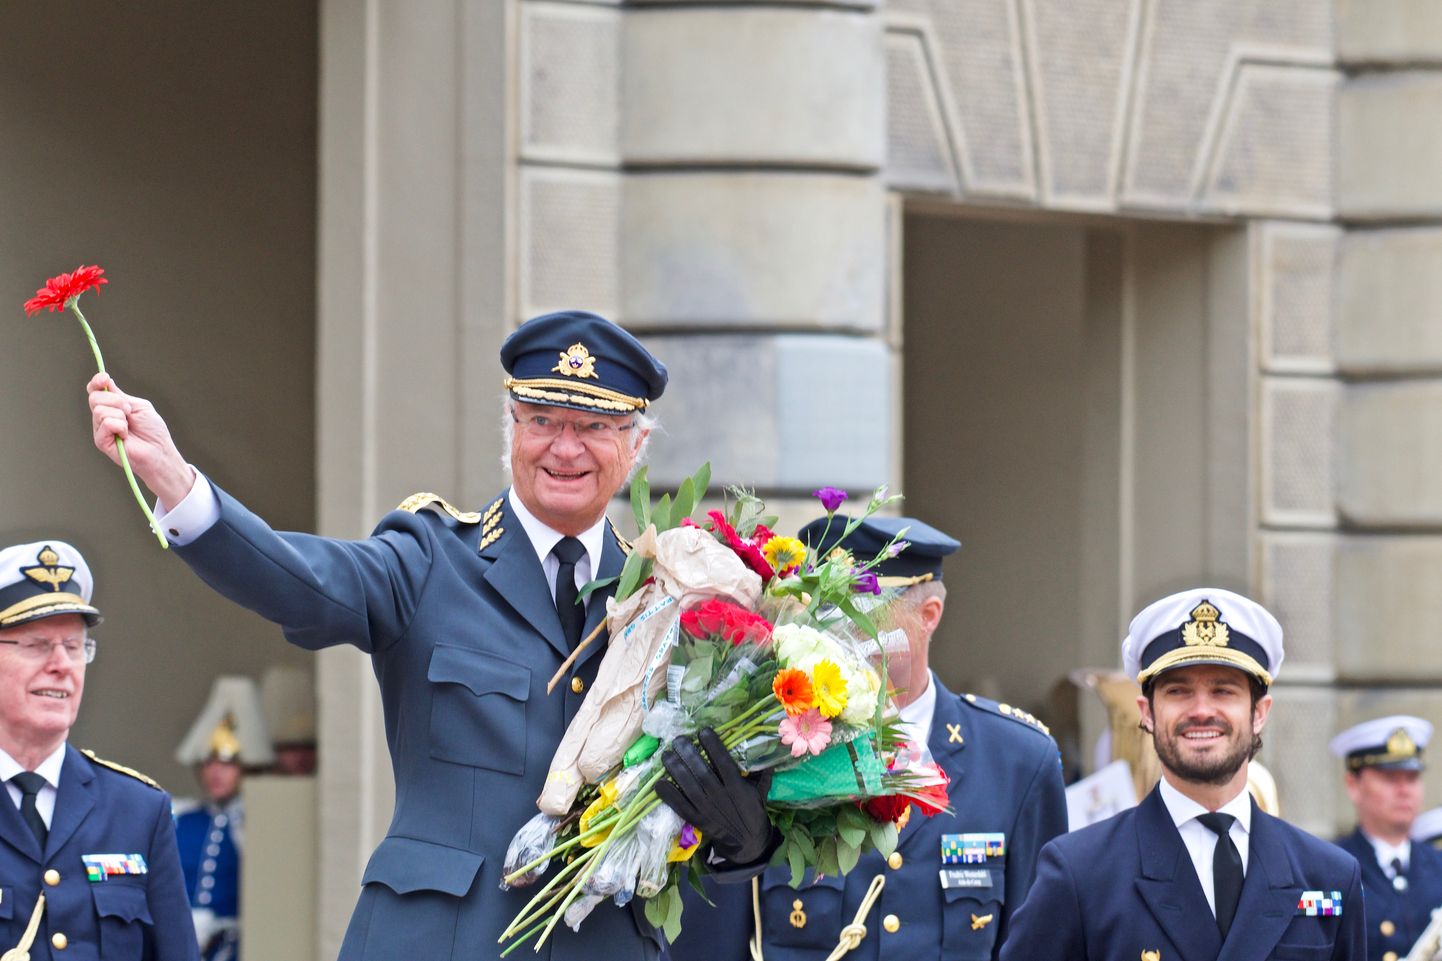 Rootsi kuningas Carl XVI Gustaf võttis 30. aprillil 2018 Stockholmis kuningapalee juures inimestelt õnnitlusi ja lilli vastu. Ta sai siis 72-aastaseks